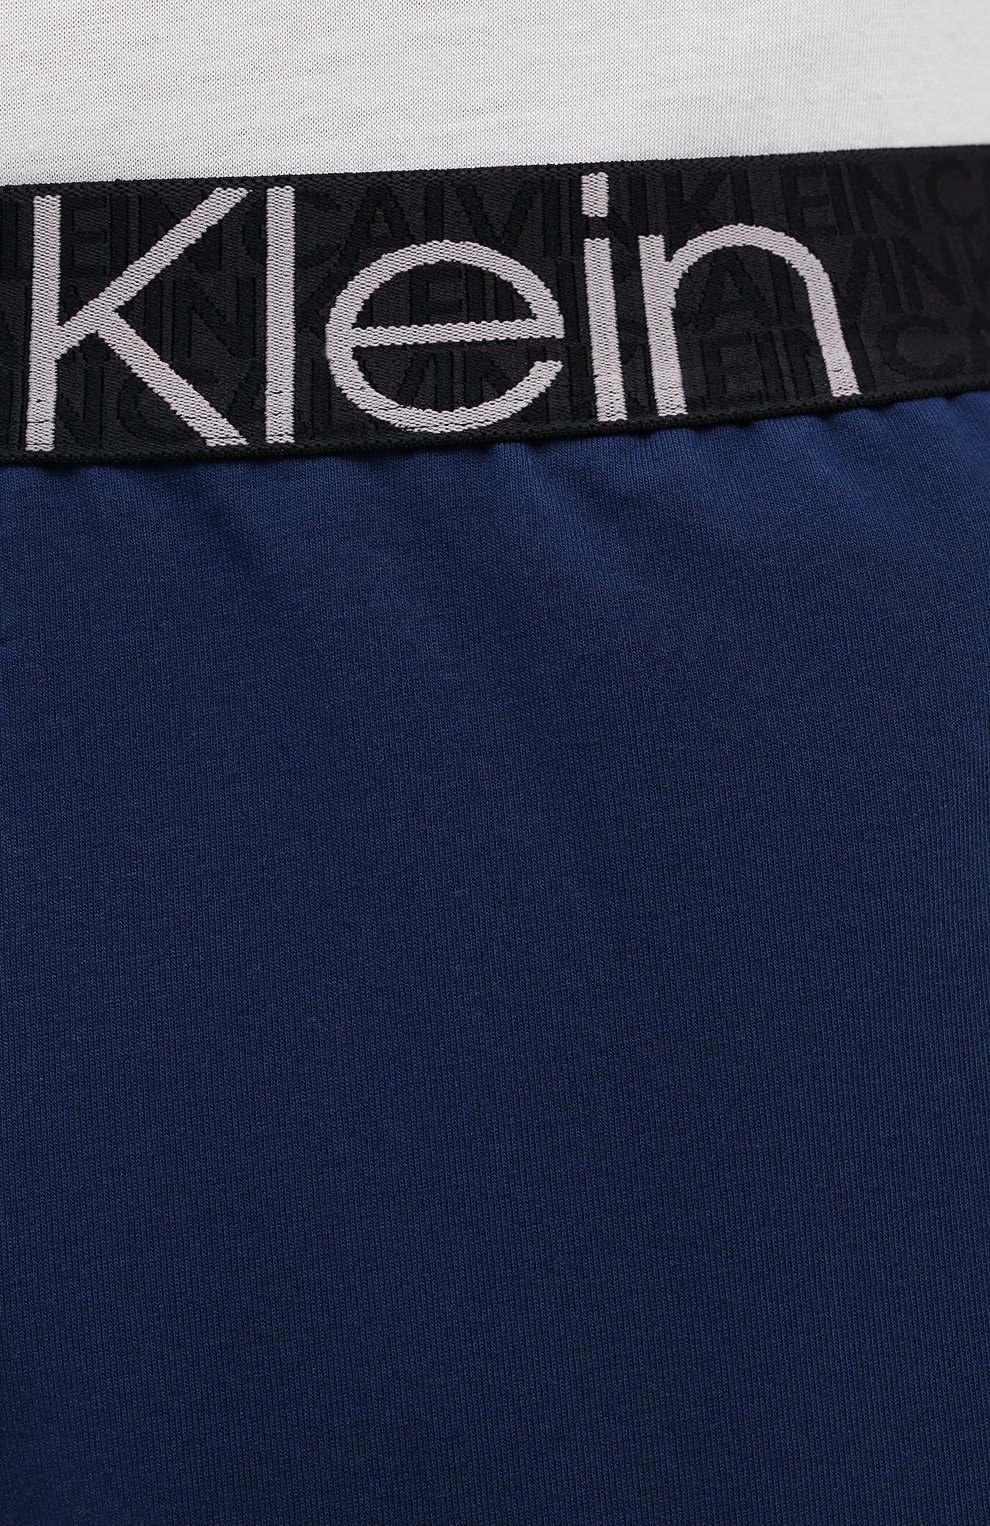 Мужские шорты CALVIN KLEIN синего цвета, арт. NM2127E | Фото 5 (Длина Шорты М: До колена; Принт: Без принта; Случай: Повседневный; Материал внешний: Синтетический материал, Хлопок; Стили: Спорт-шик)